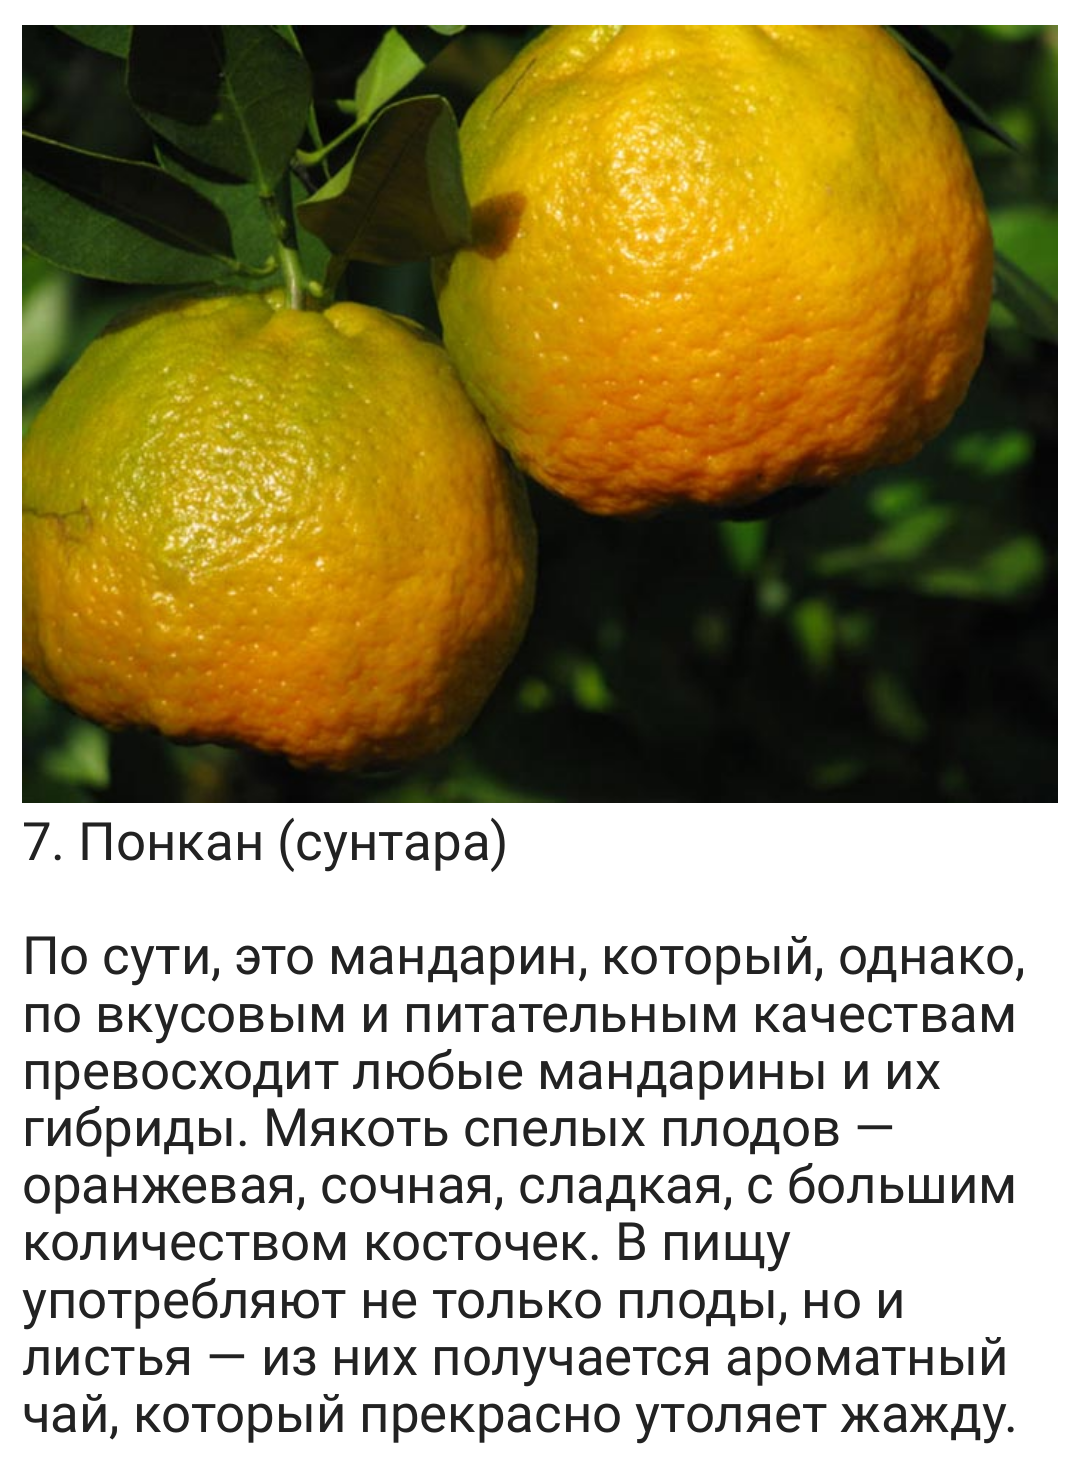 Помело: гибрид каких фруктов, полезные свойства, где растет, как выбрать спелый фрукт, польза и вред